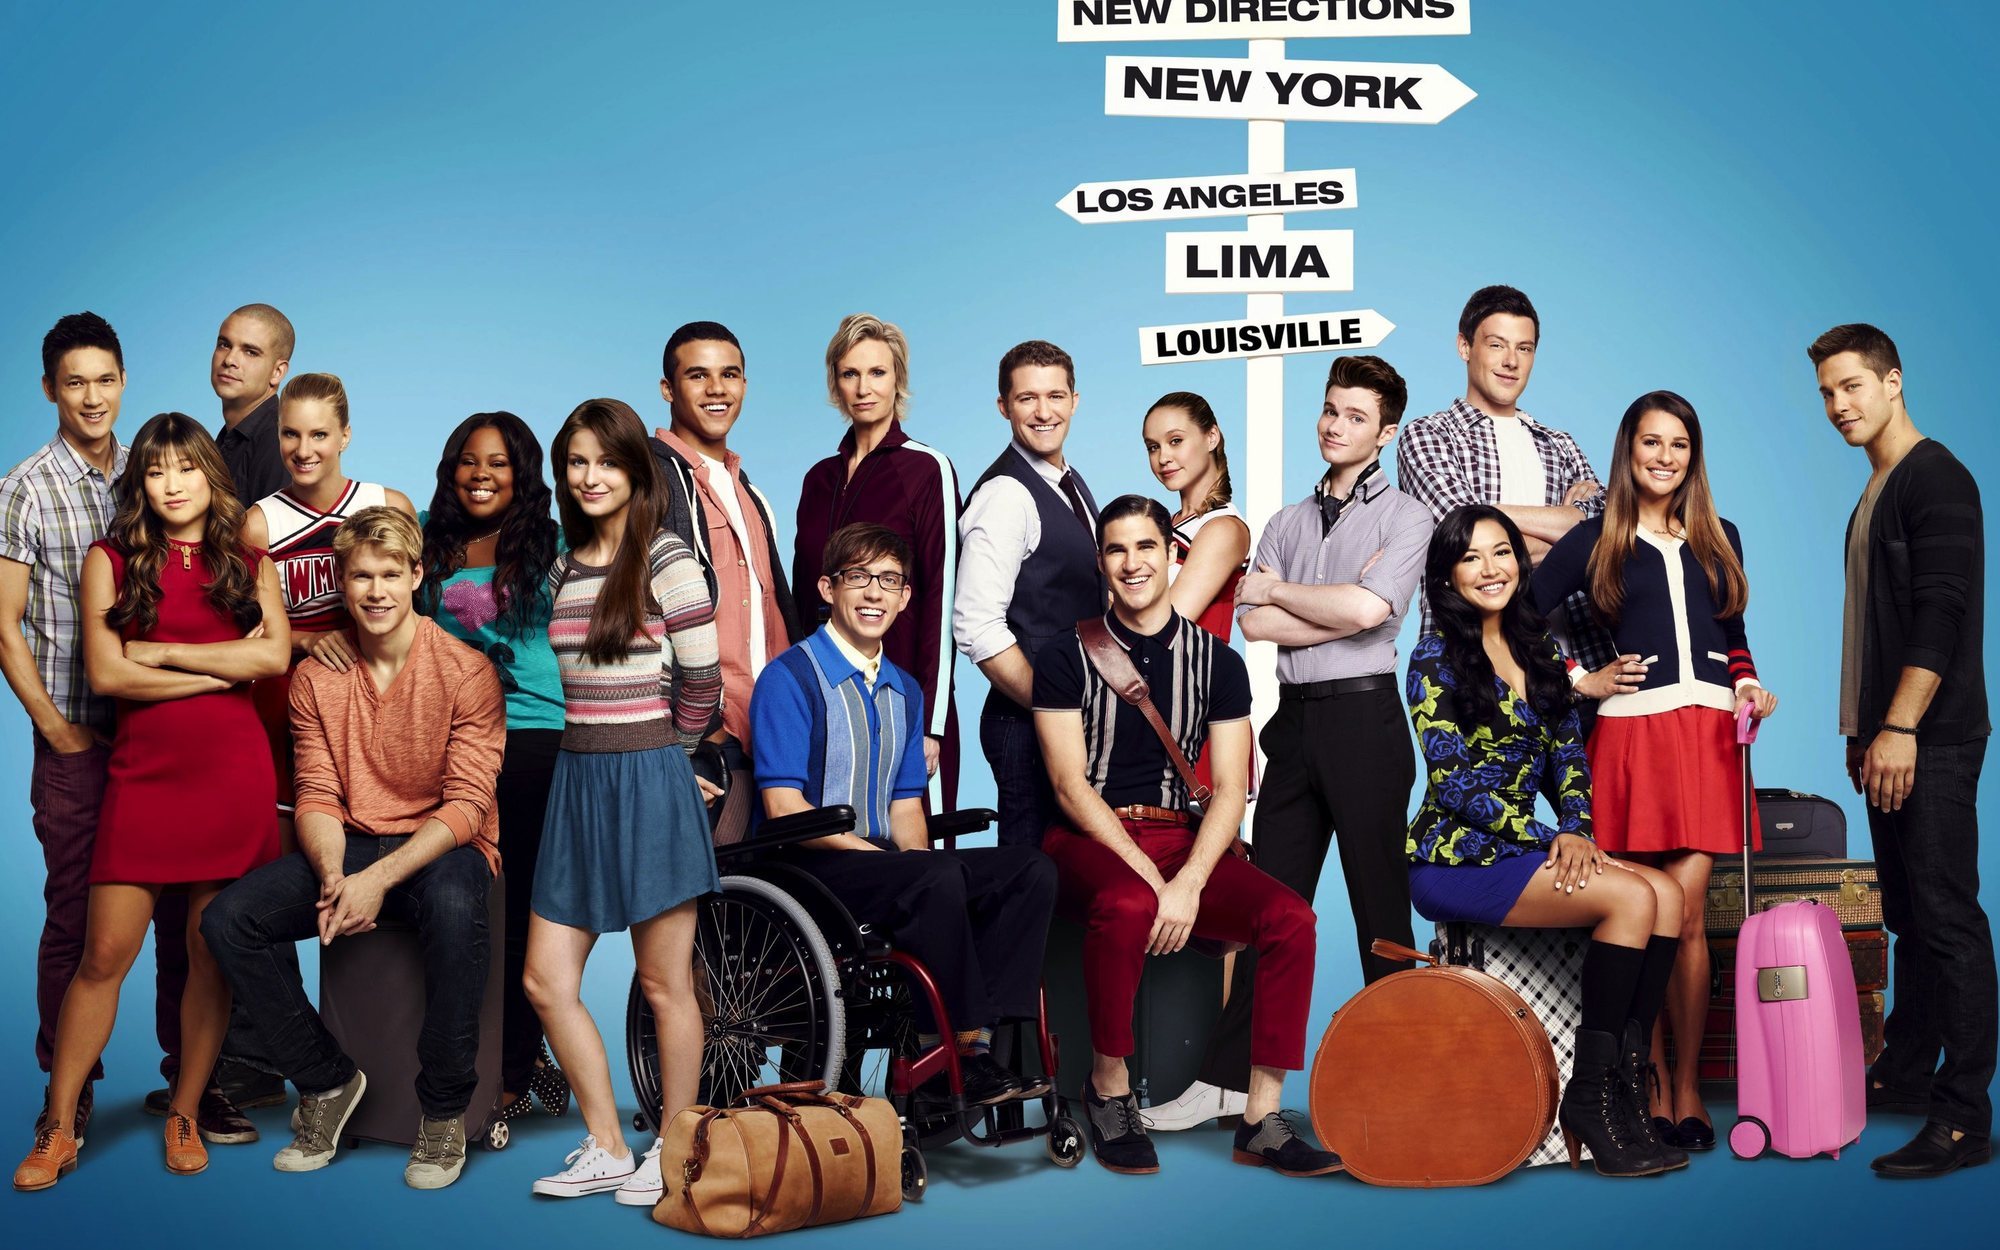 El reparto de 'Glee' se despide de Naya Rivera tras encontrar su cadáver